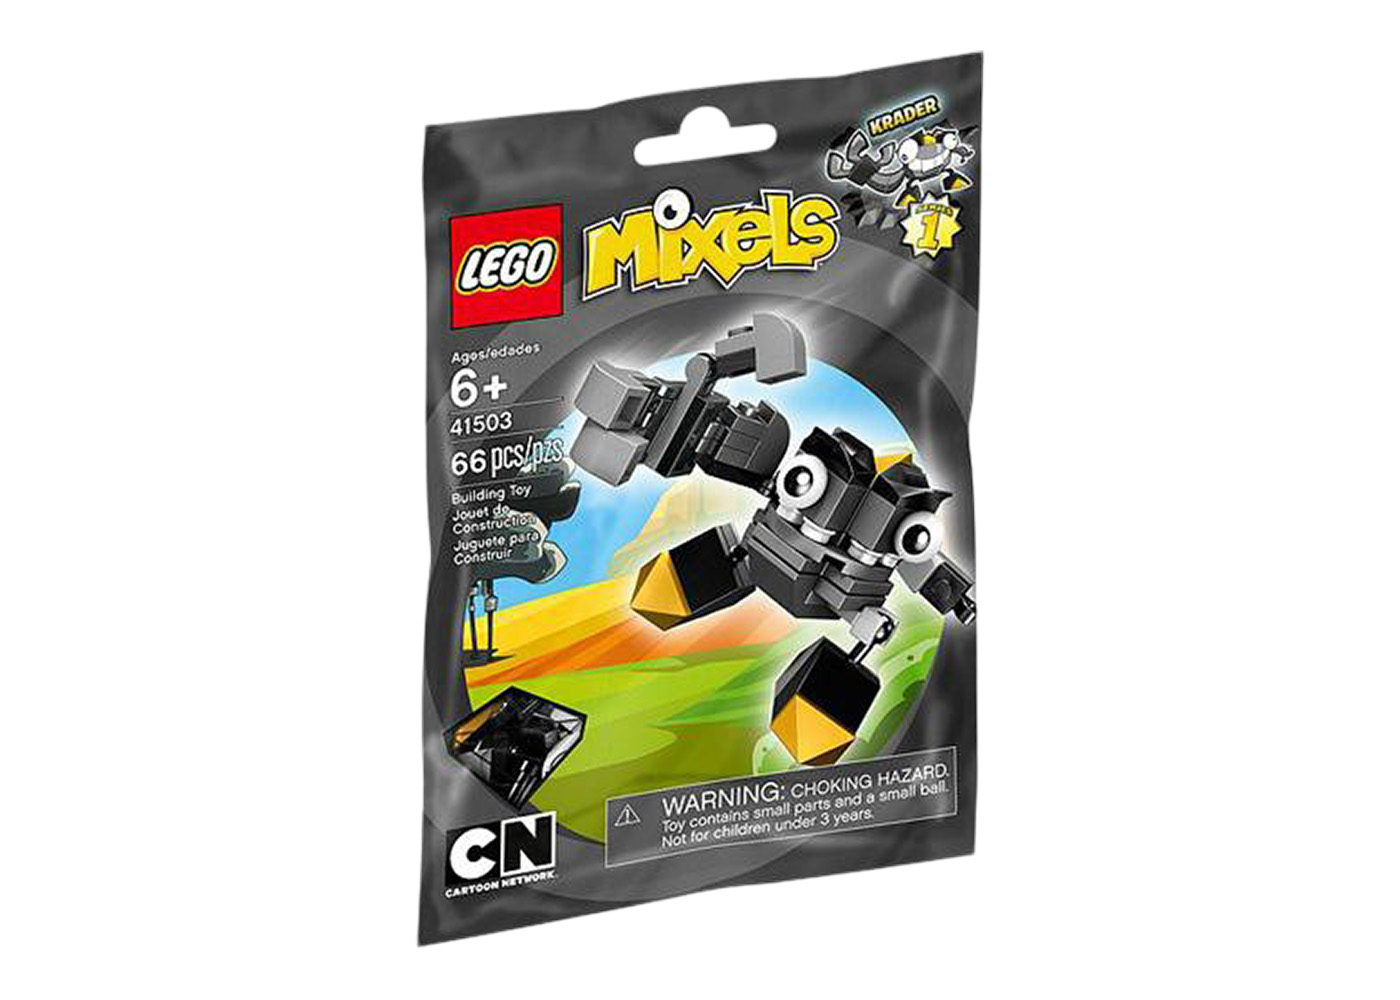 LEGO Mixels Teslo Set 41506 - US